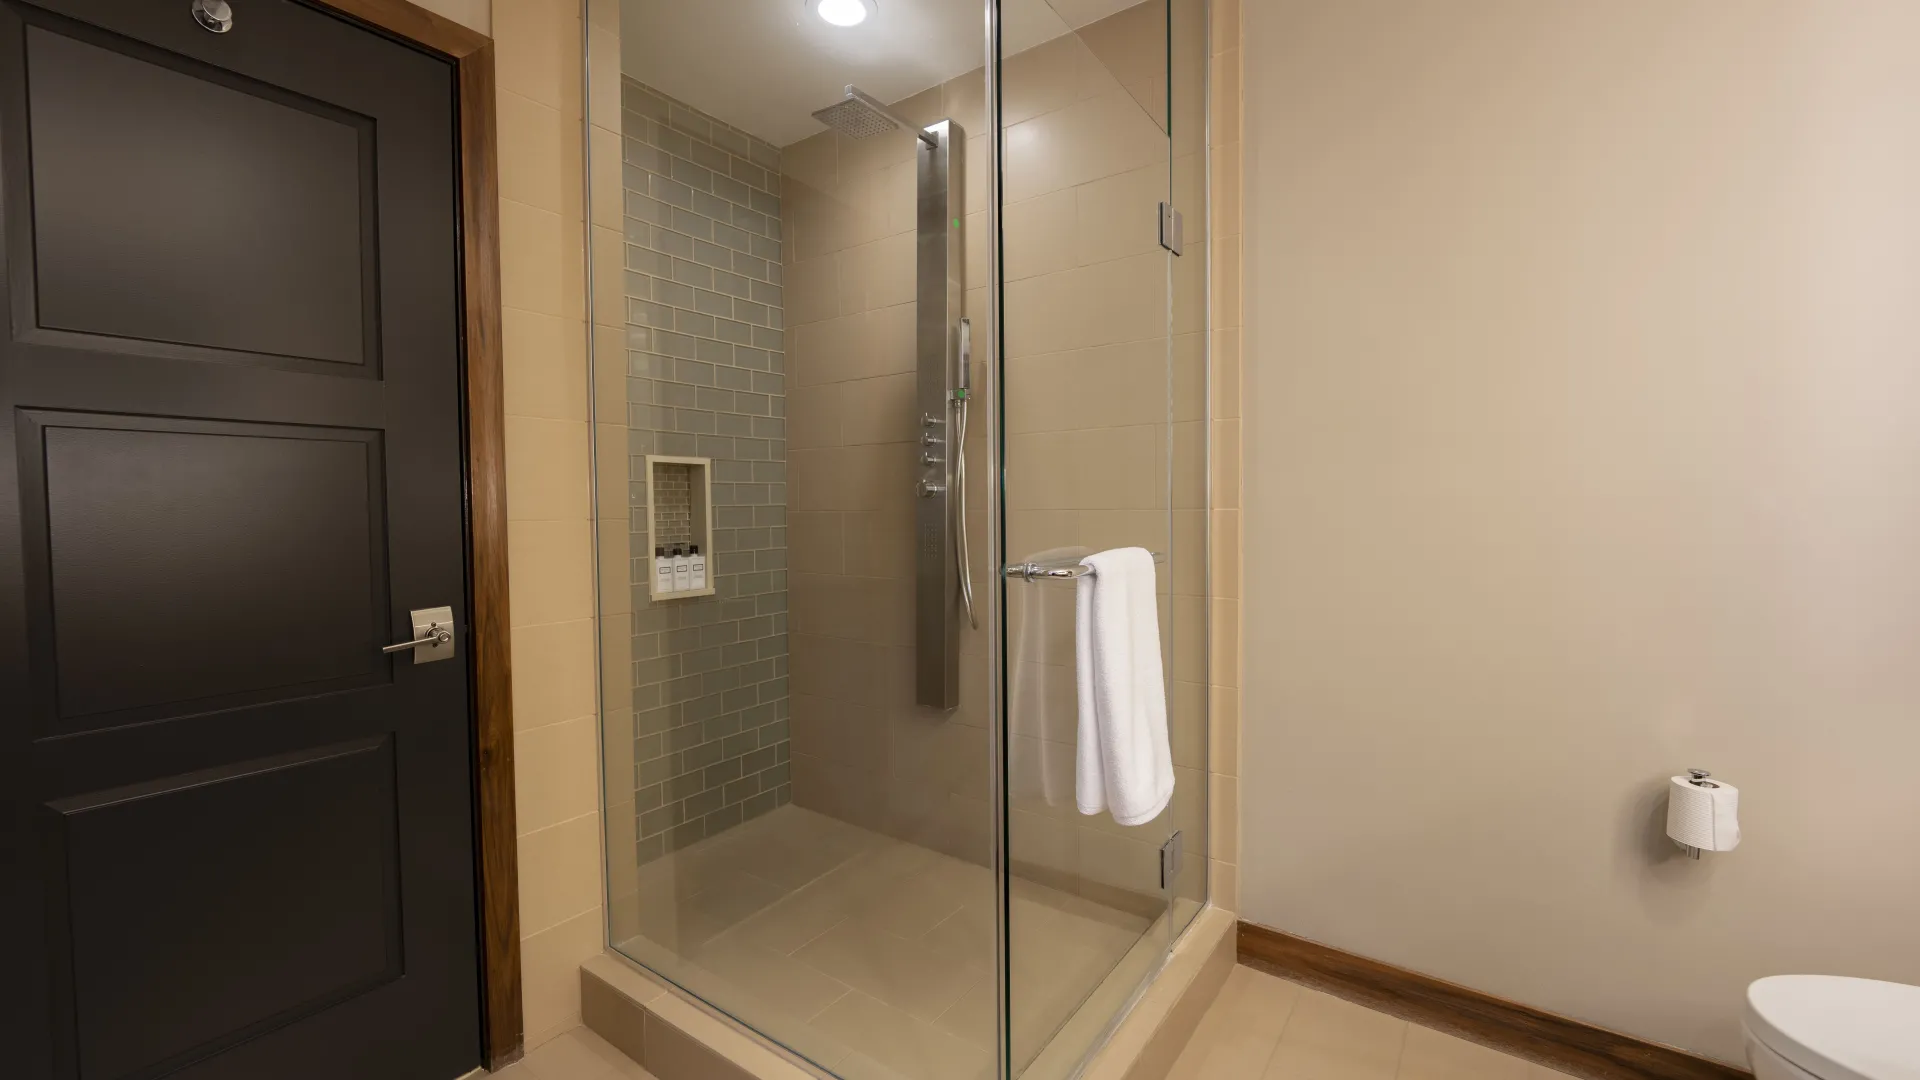 Evermore Villas Bathroom Shower